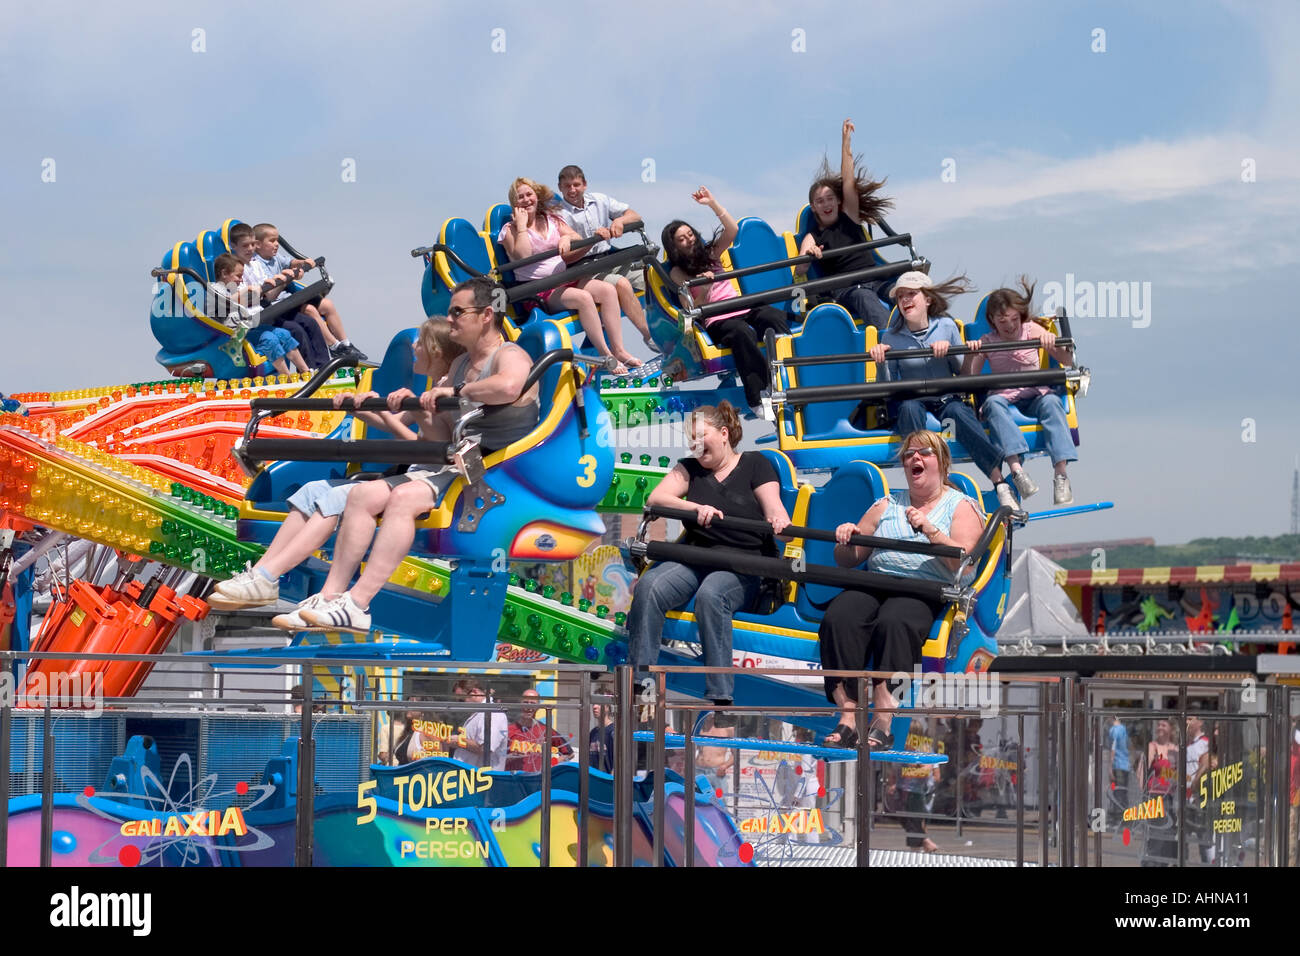 Galaxia Fairground ride on East Pier. Brighton, England Stock Photo